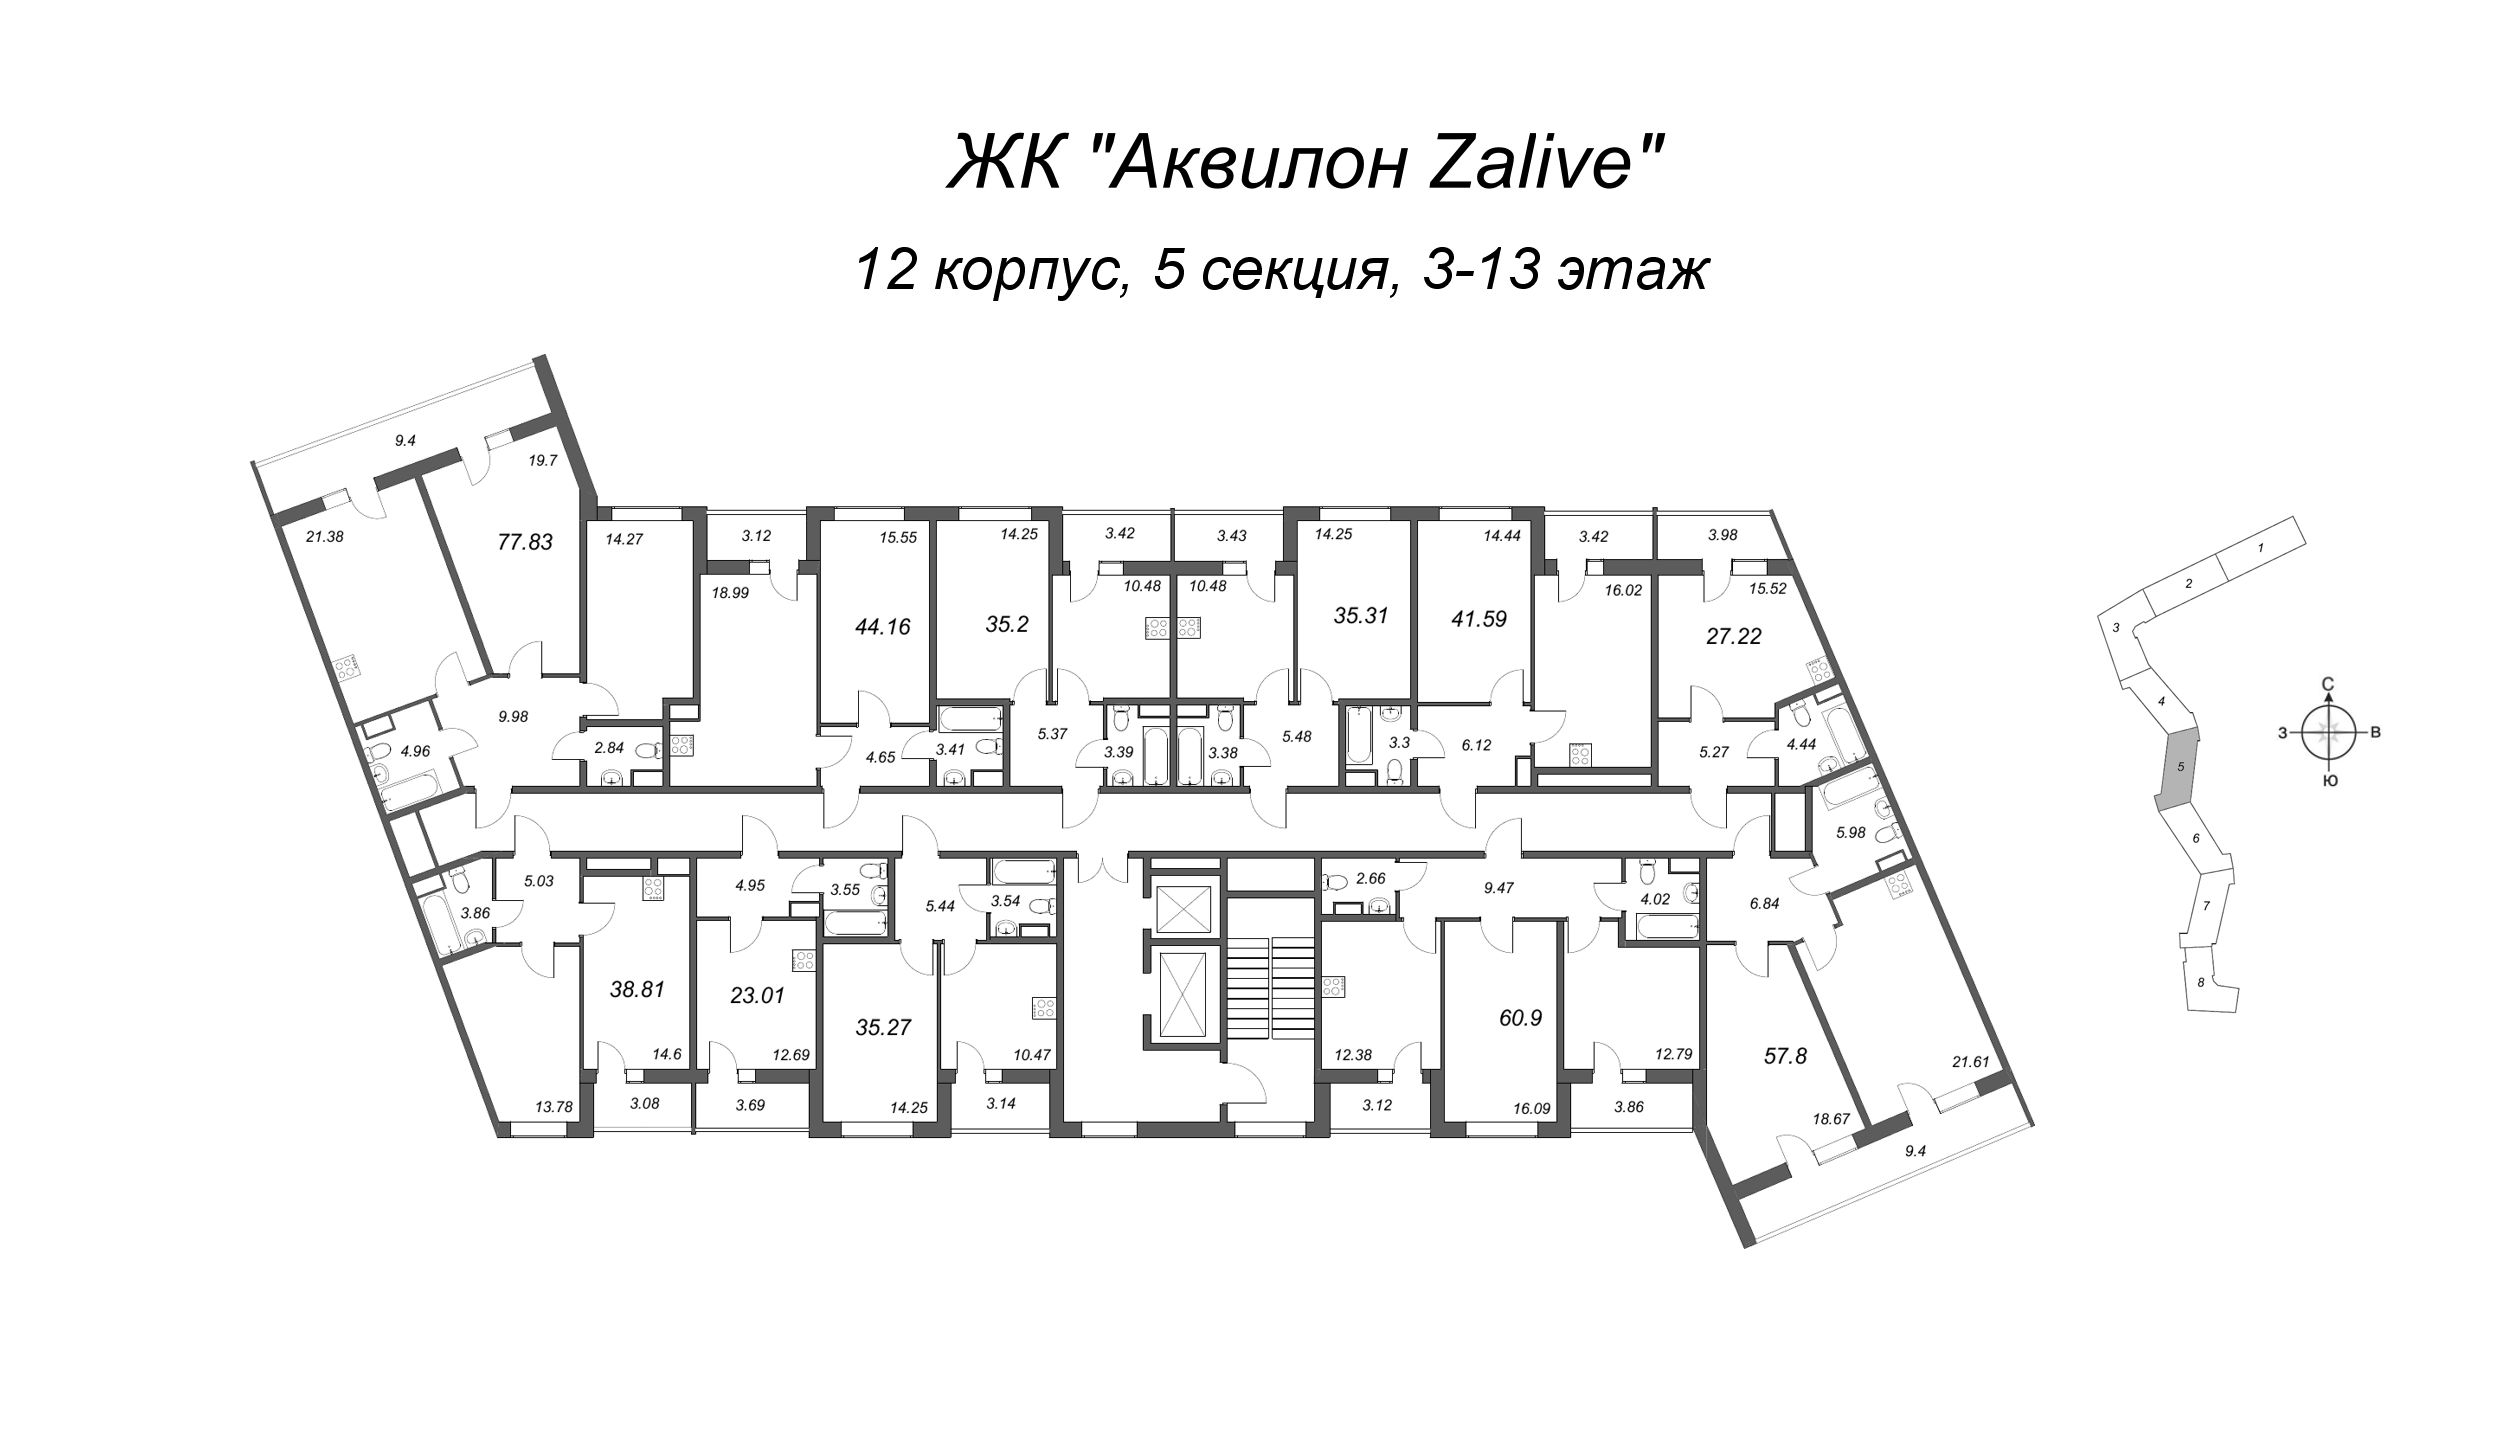 3-комнатная (Евро) квартира, 77.7 м² в ЖК "Аквилон Zalive" - планировка этажа